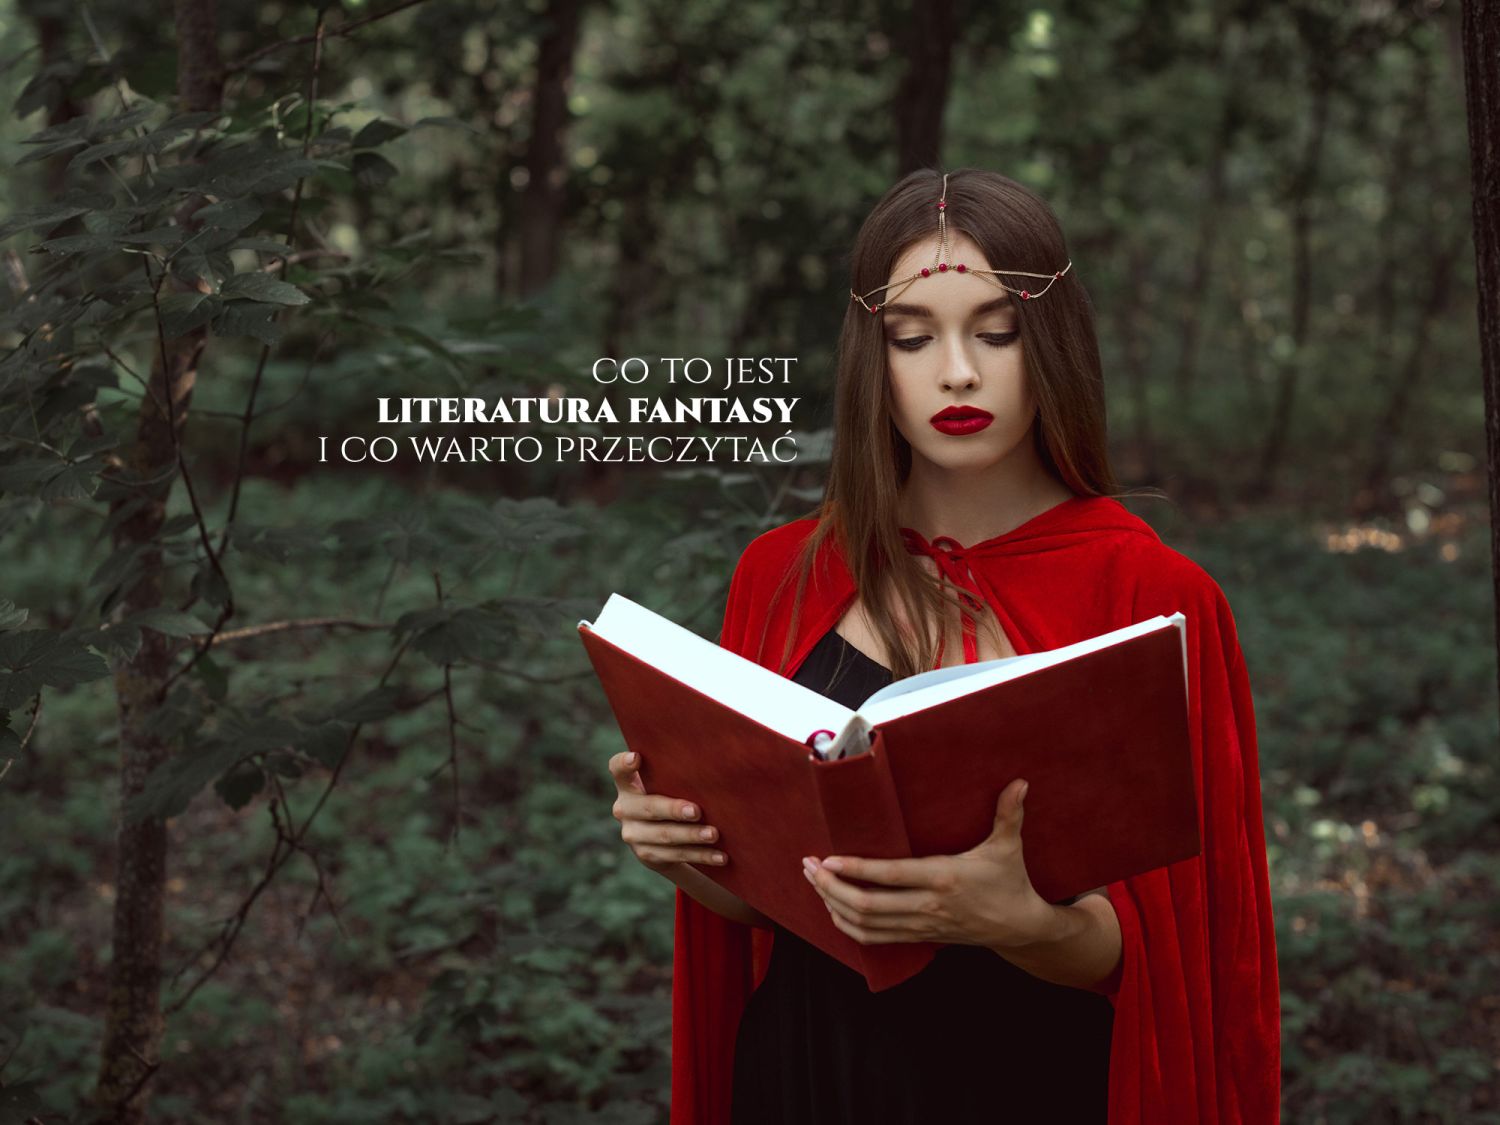 Co to jest literatura fantasy i które książki warto przeczytać z tego gatunku?